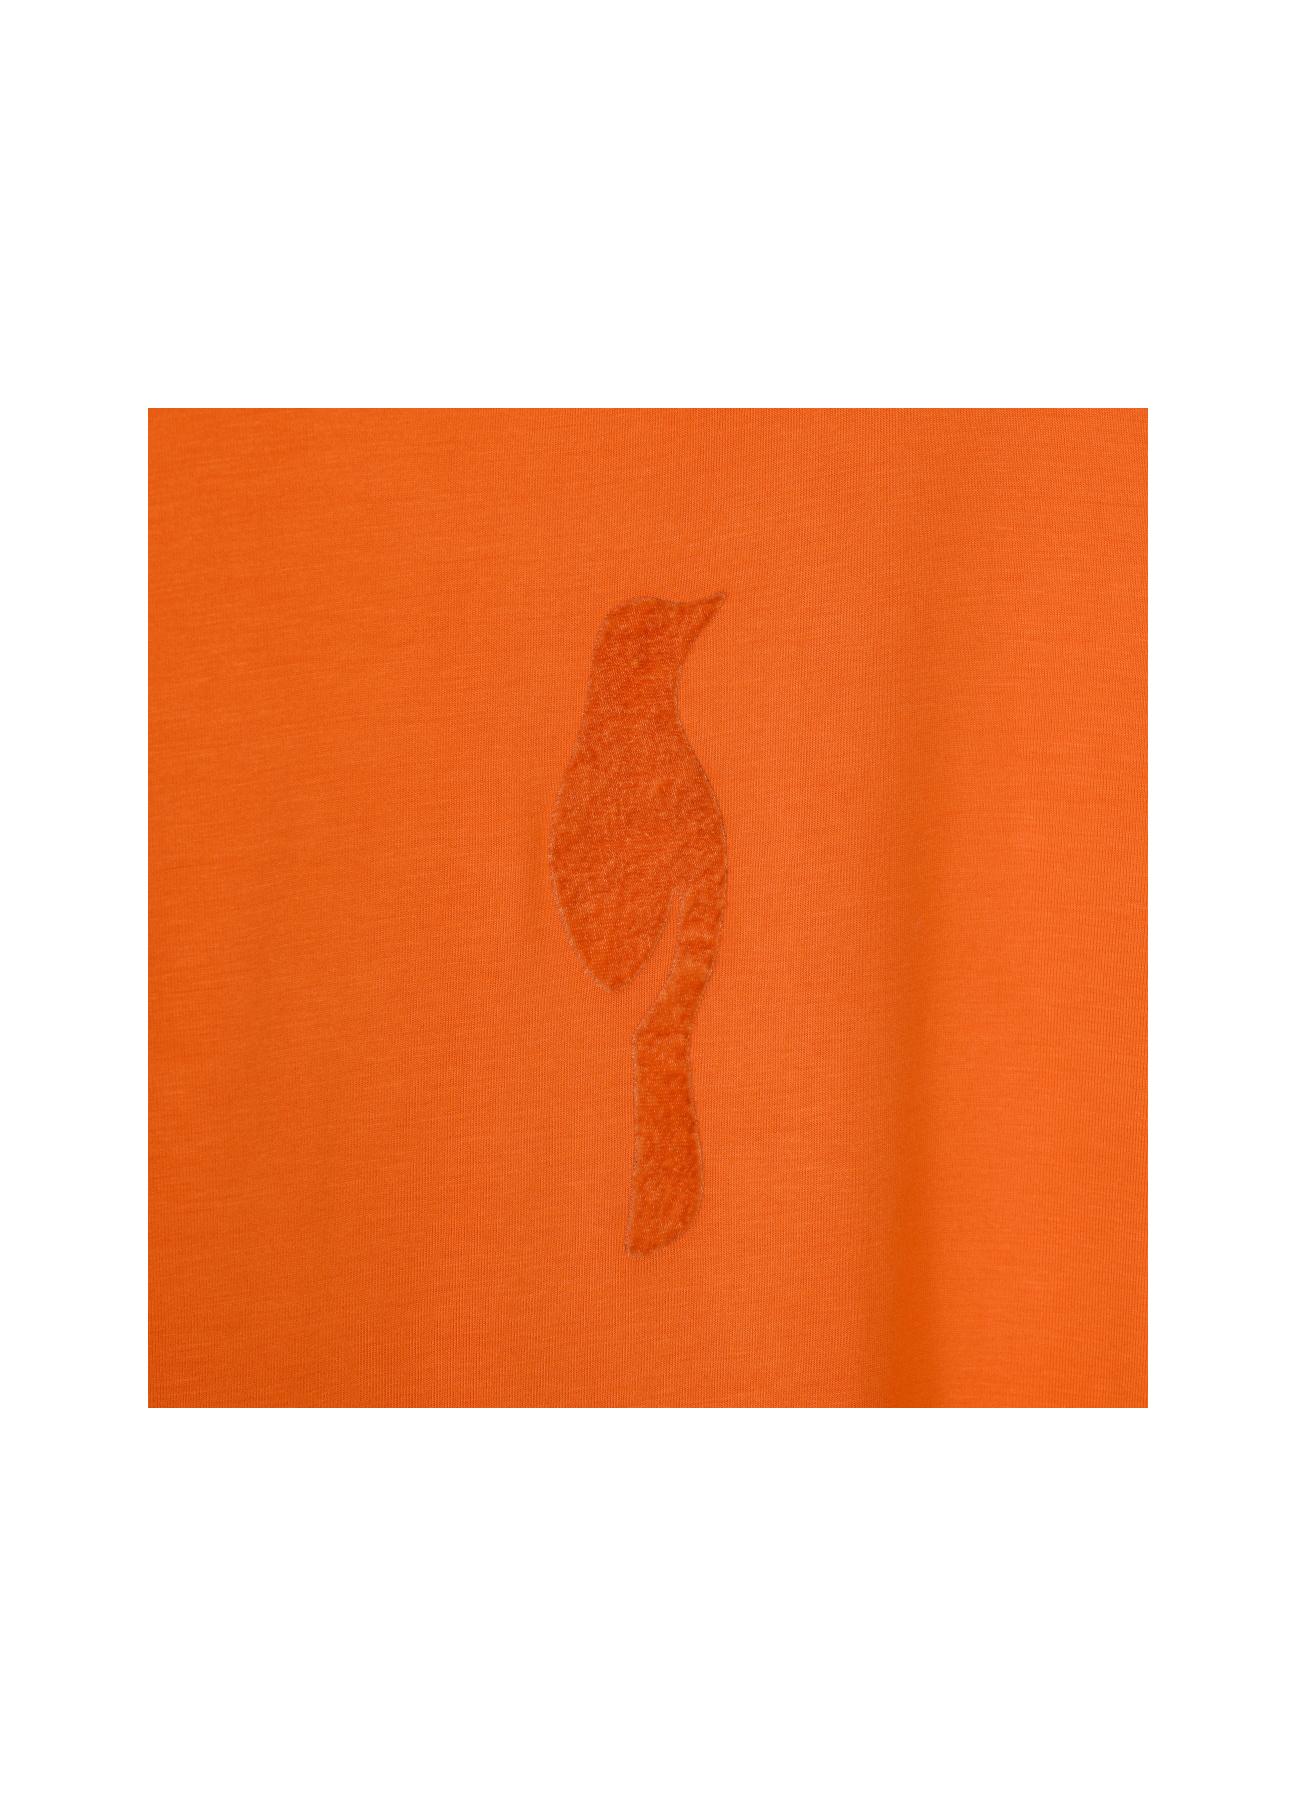 Pomarańczowy T-shirt damski z wilgą TSHDT-0090-30(W22)